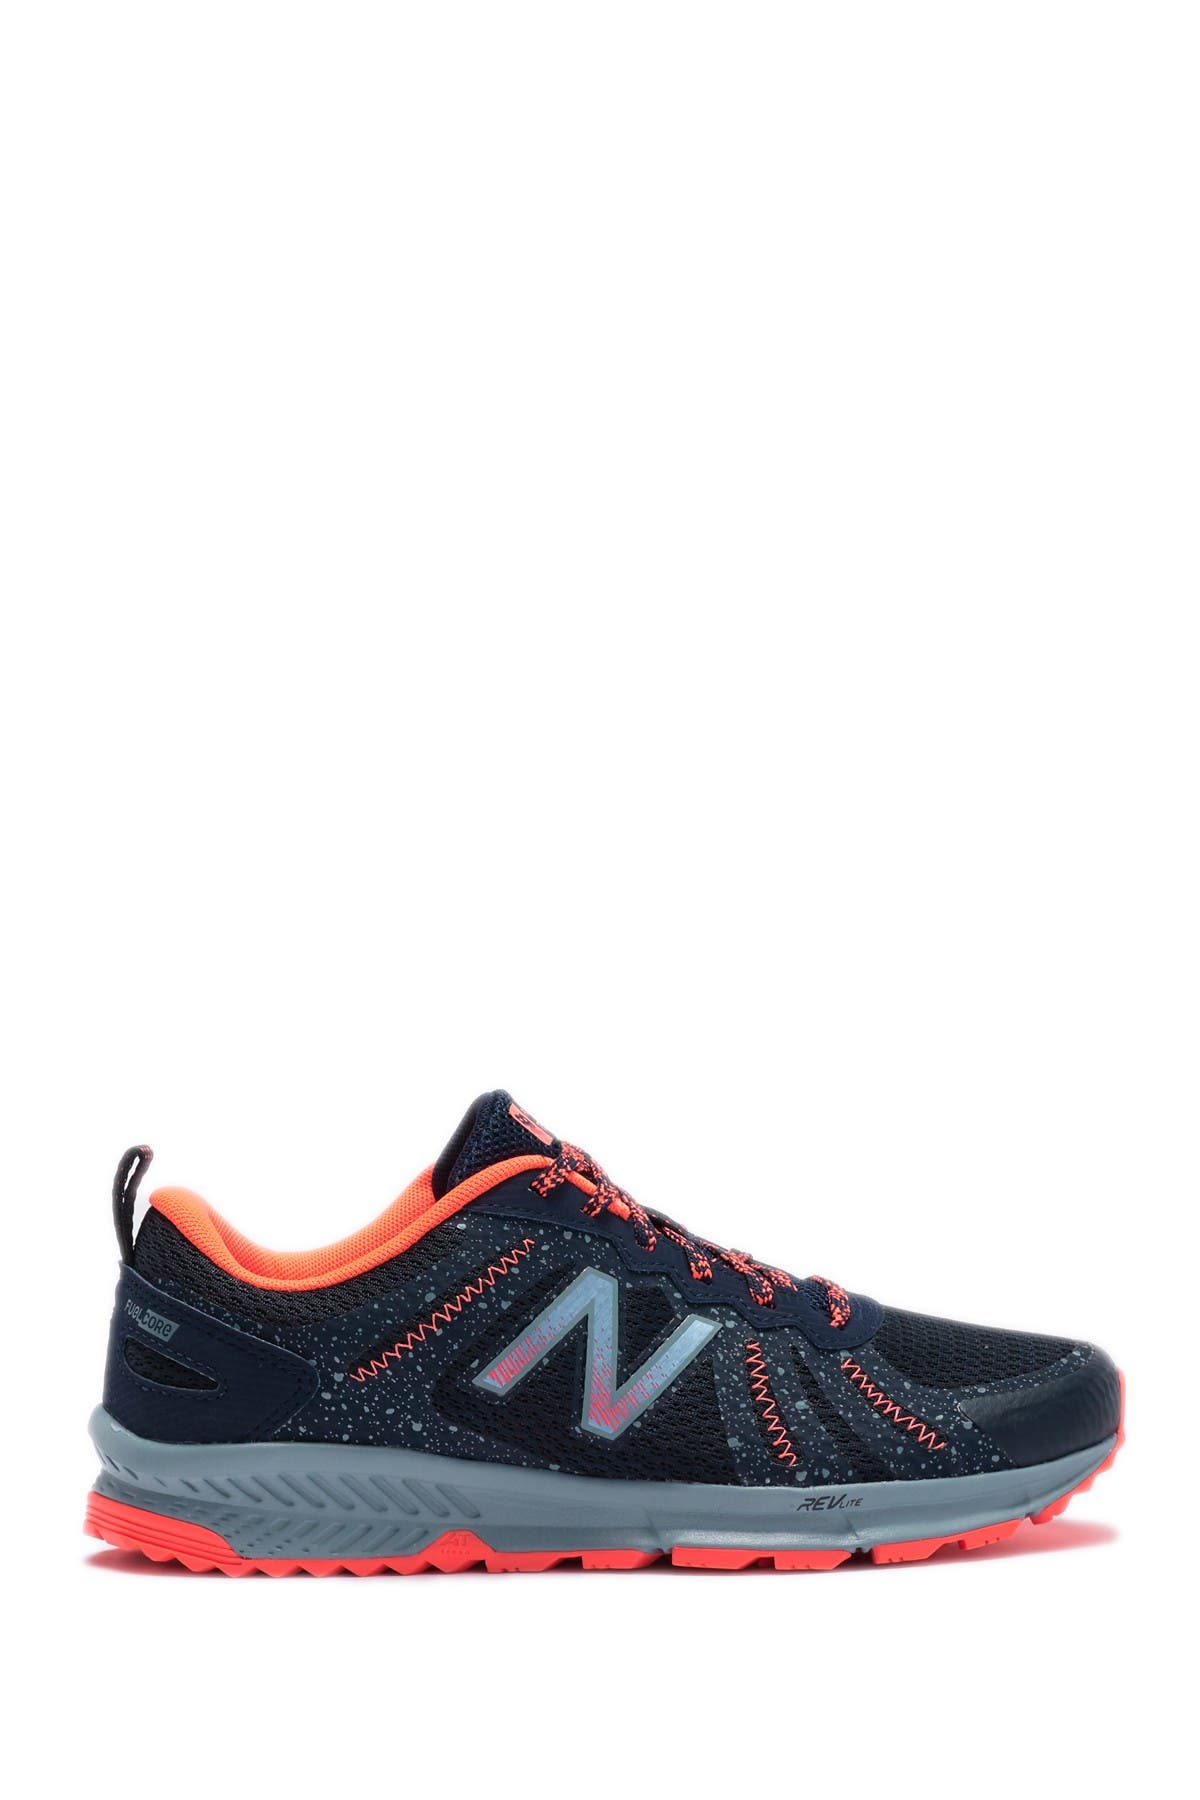 New Balance | T590 v4 Trail Running Shoe | Nordstrom Rack